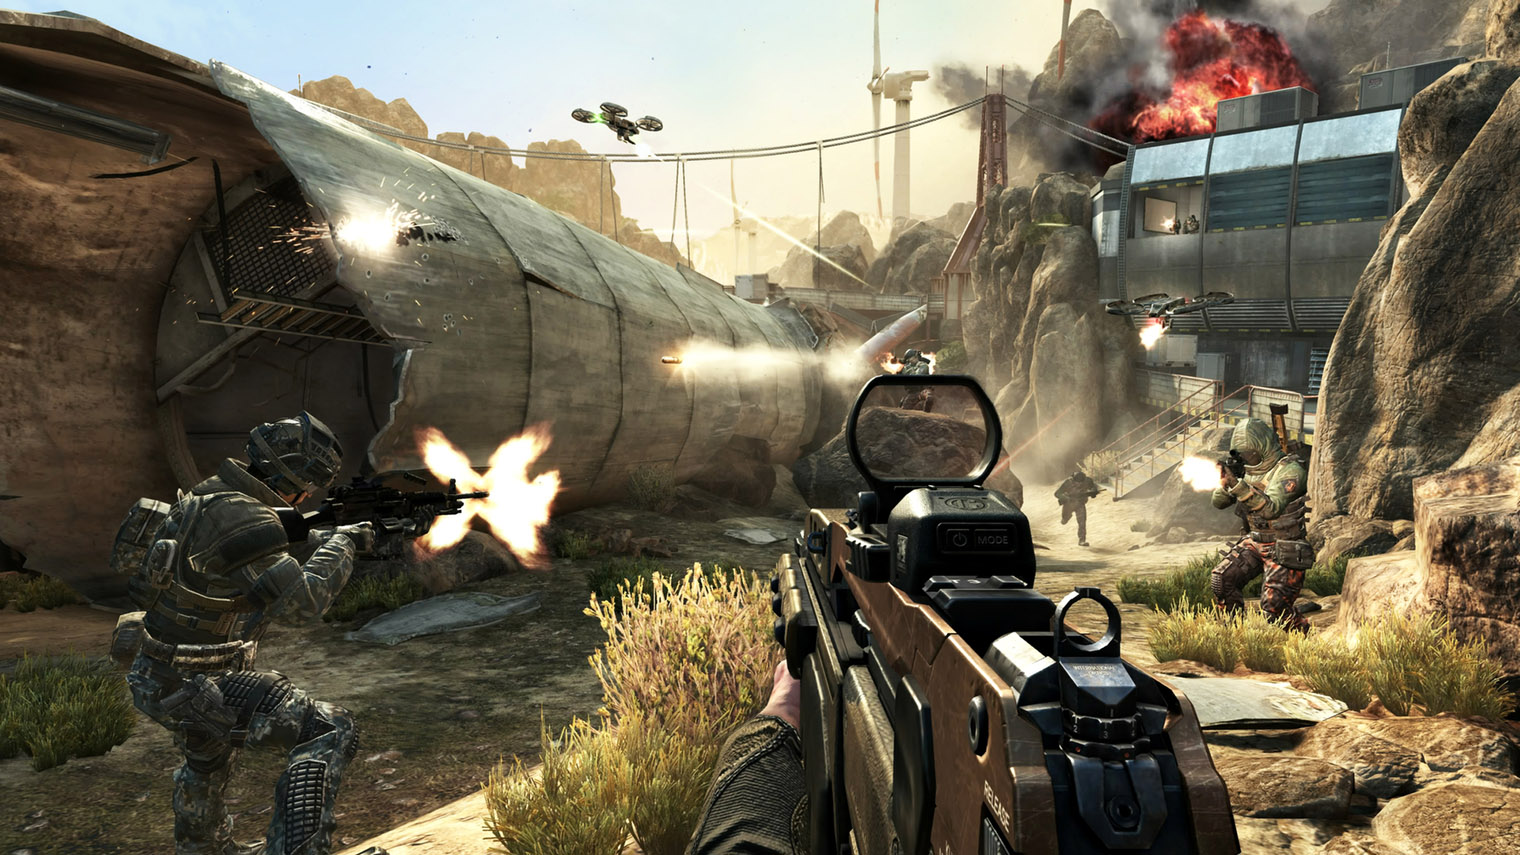 Call of Duty: Black Ops 2 — одна из самых продаваемых частей серии. Неудивительно, что именно ее продолжением решила заняться Activision. Кадр: Activision